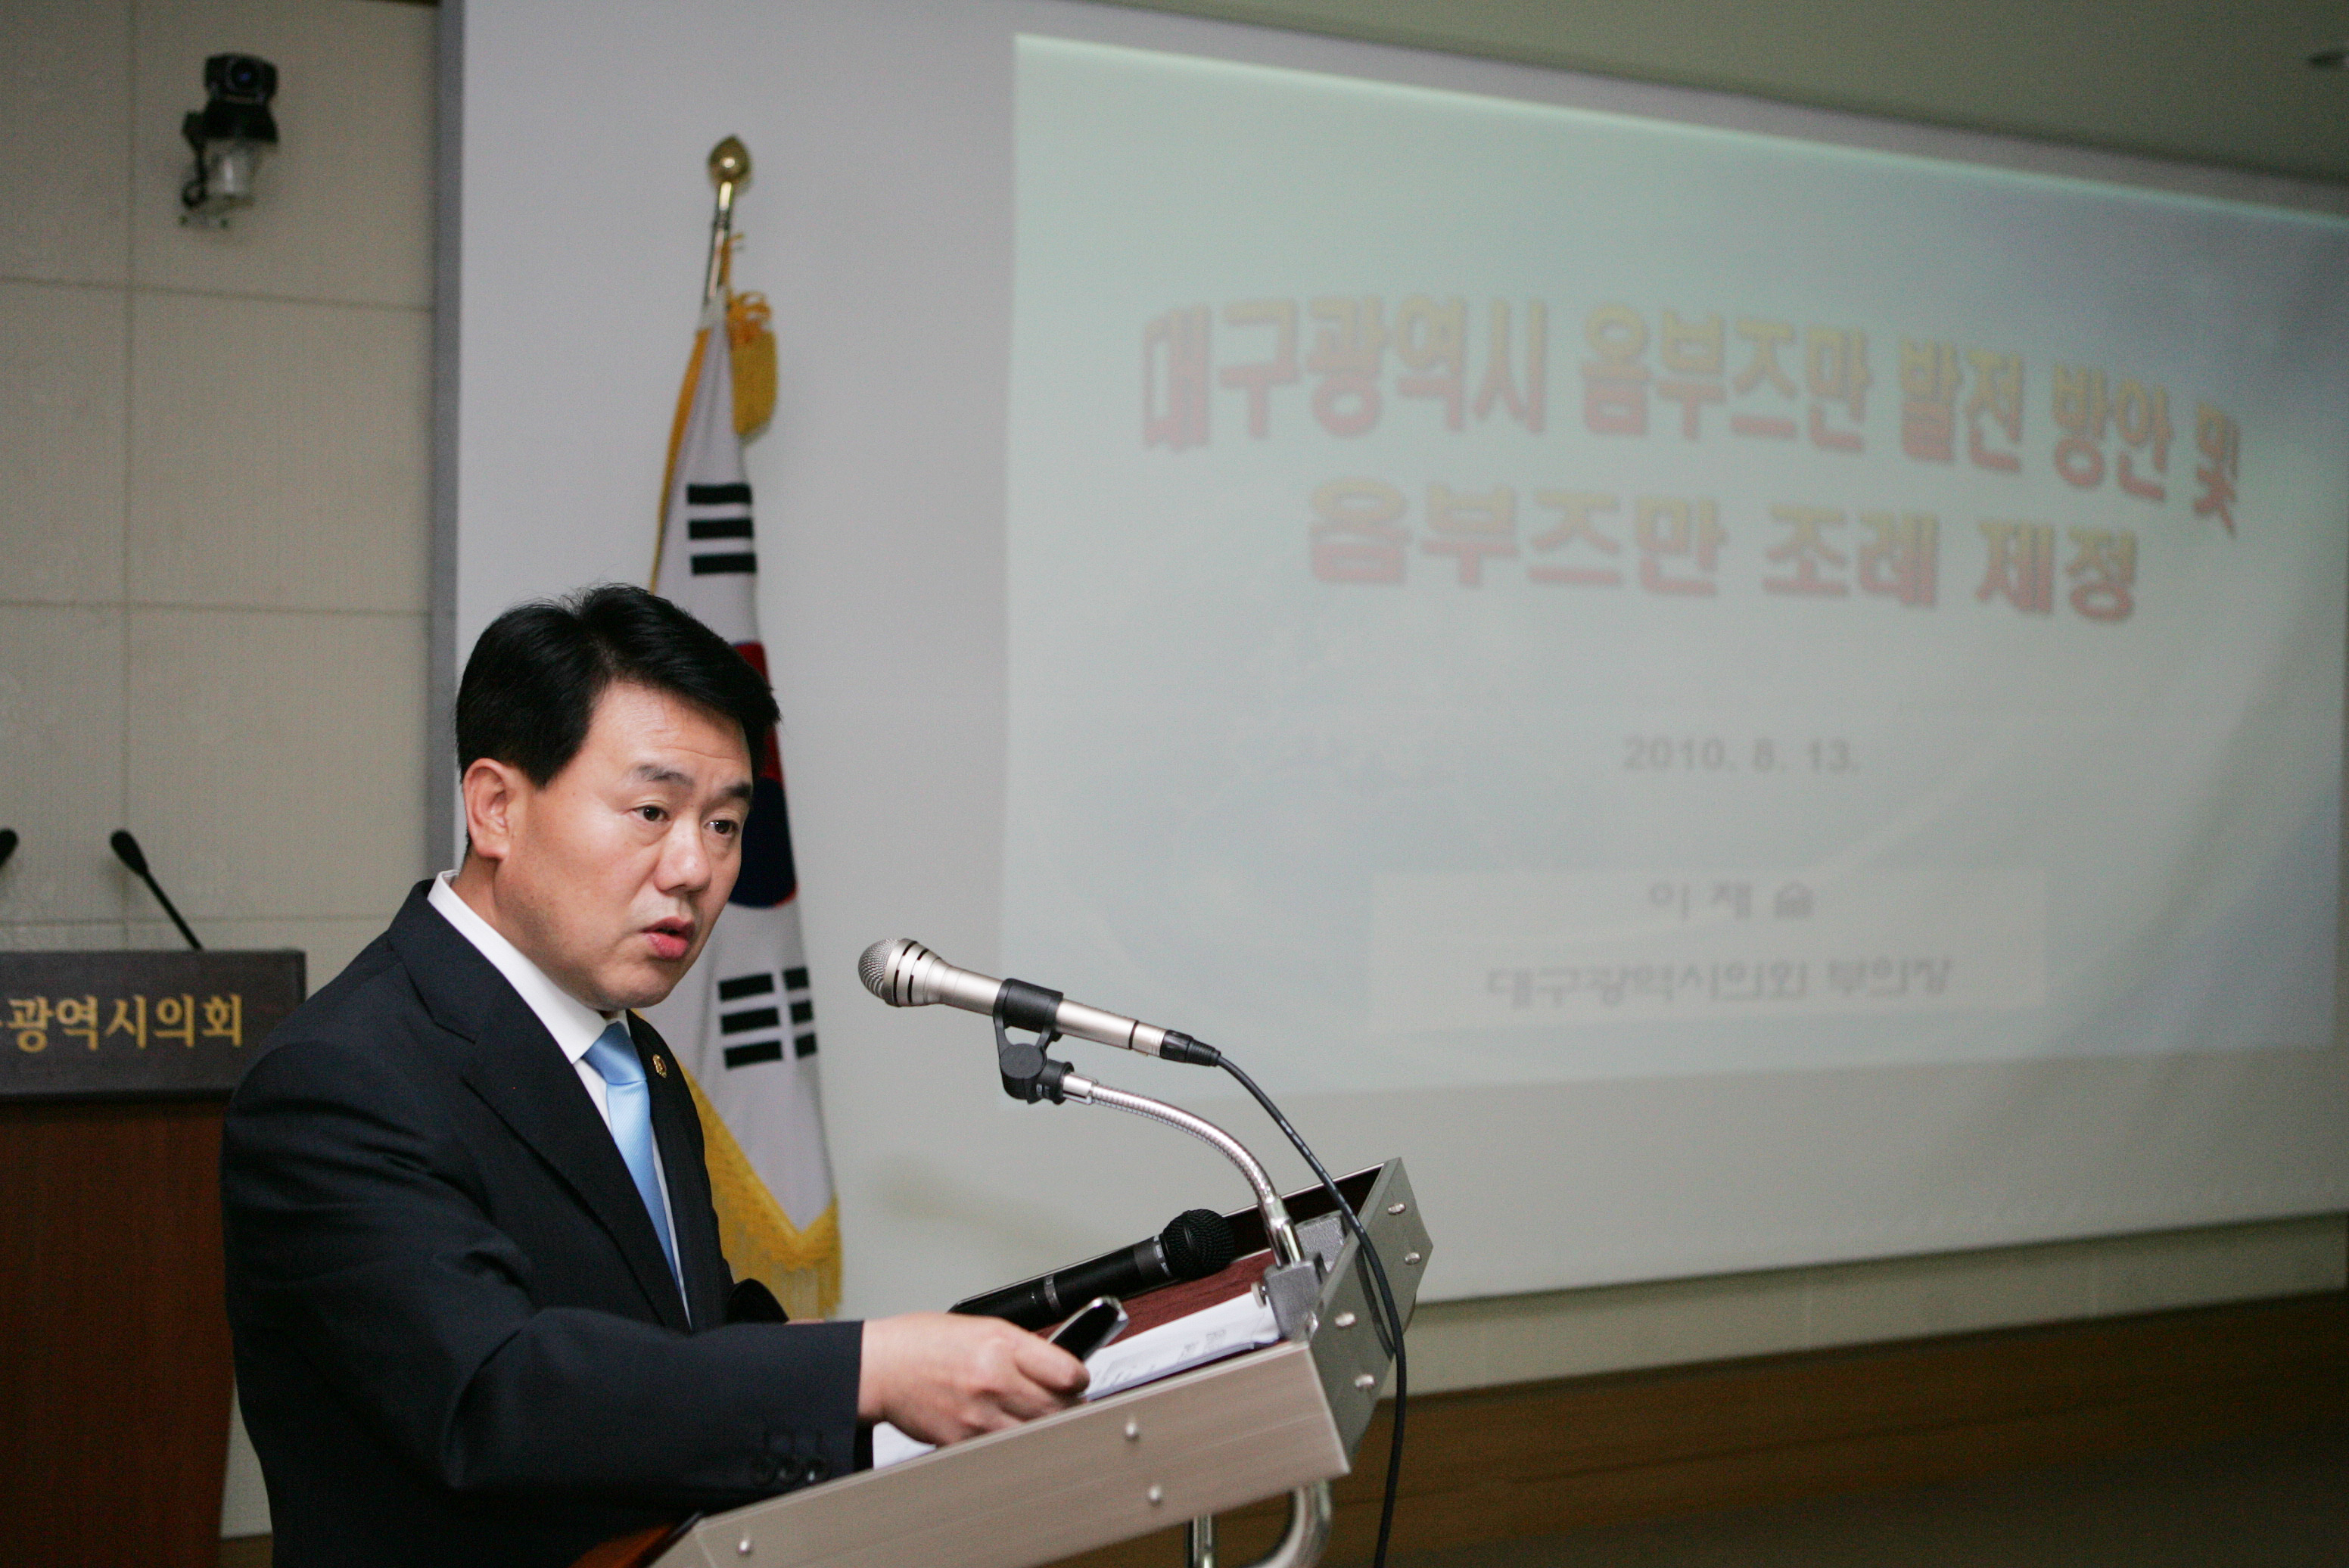 대구광역시 옴부즈만 발전 방안 및 조례제정 공청회 개최 이미지(3)